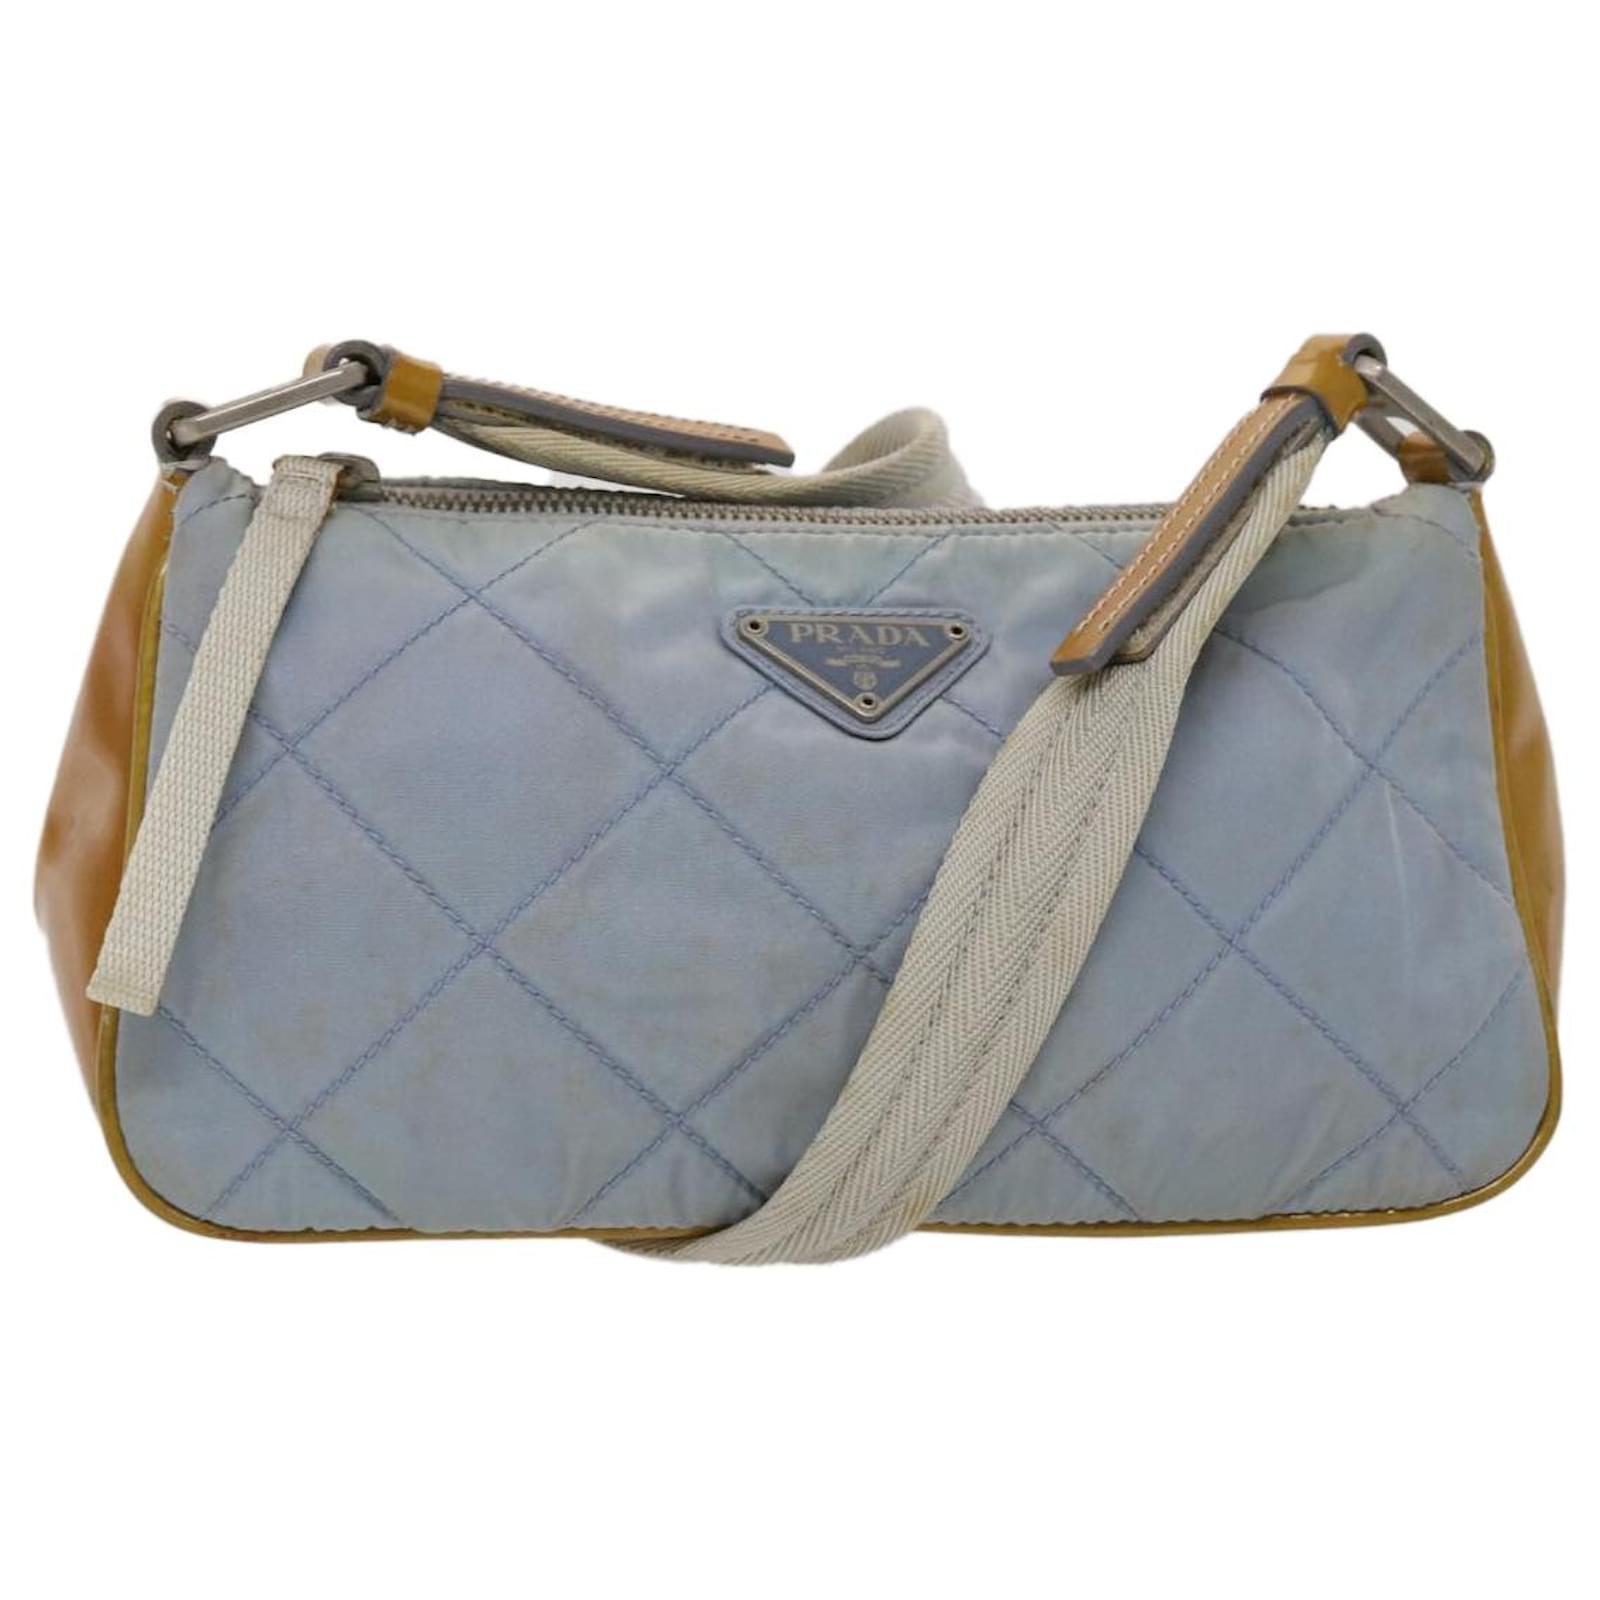 Prada Re-nylon Shoulder Bag - One-color